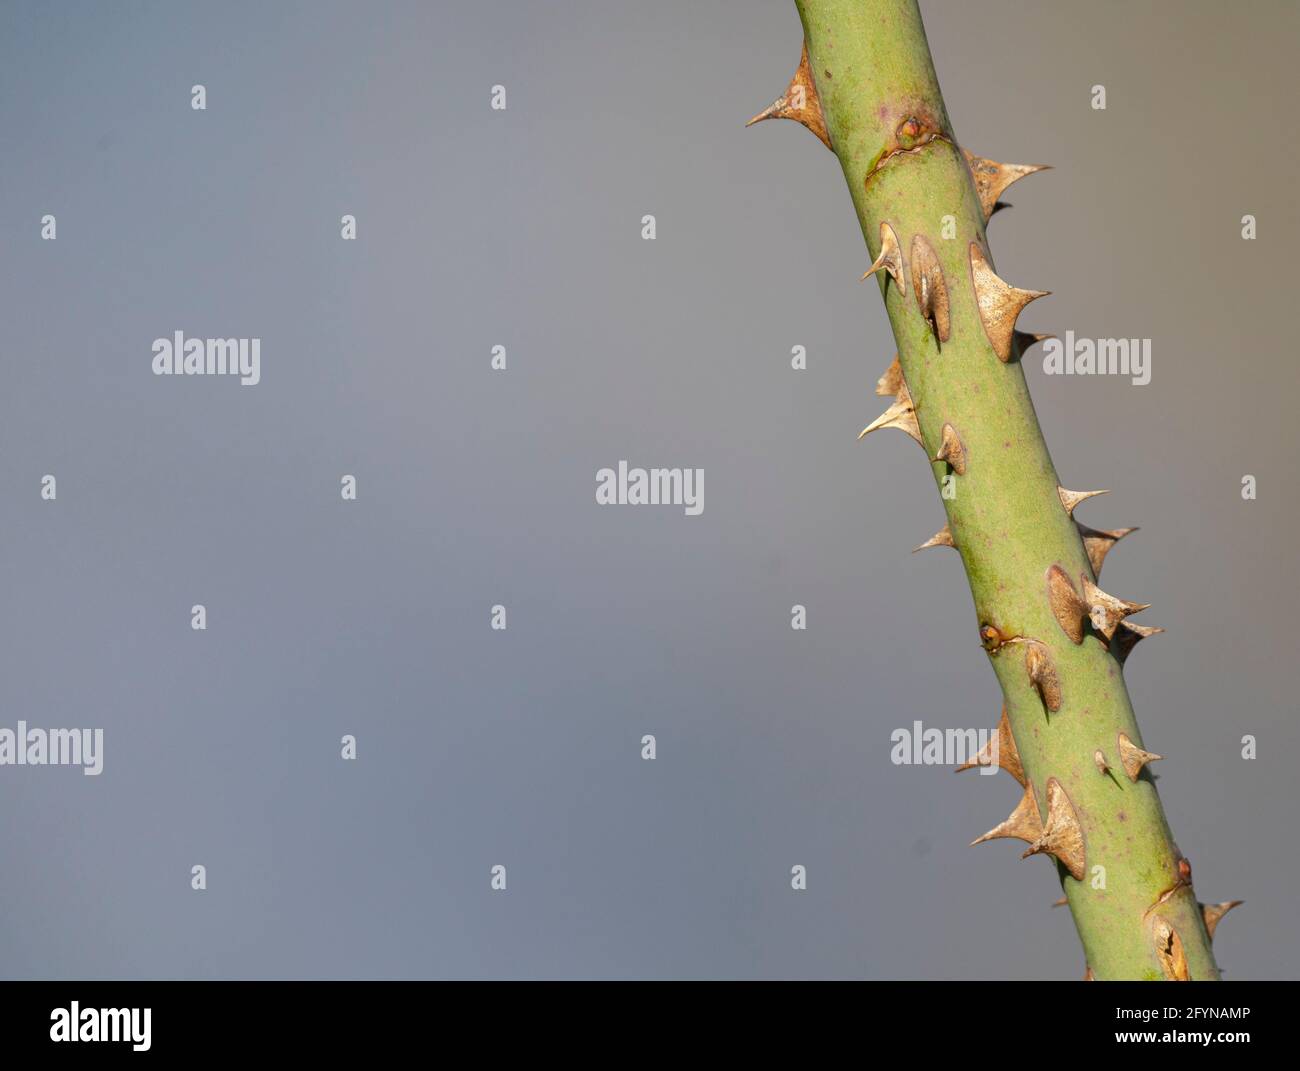 Detalle aislado de un tallo de planta con espinas afiladas y. un fondo borroso Foto de stock